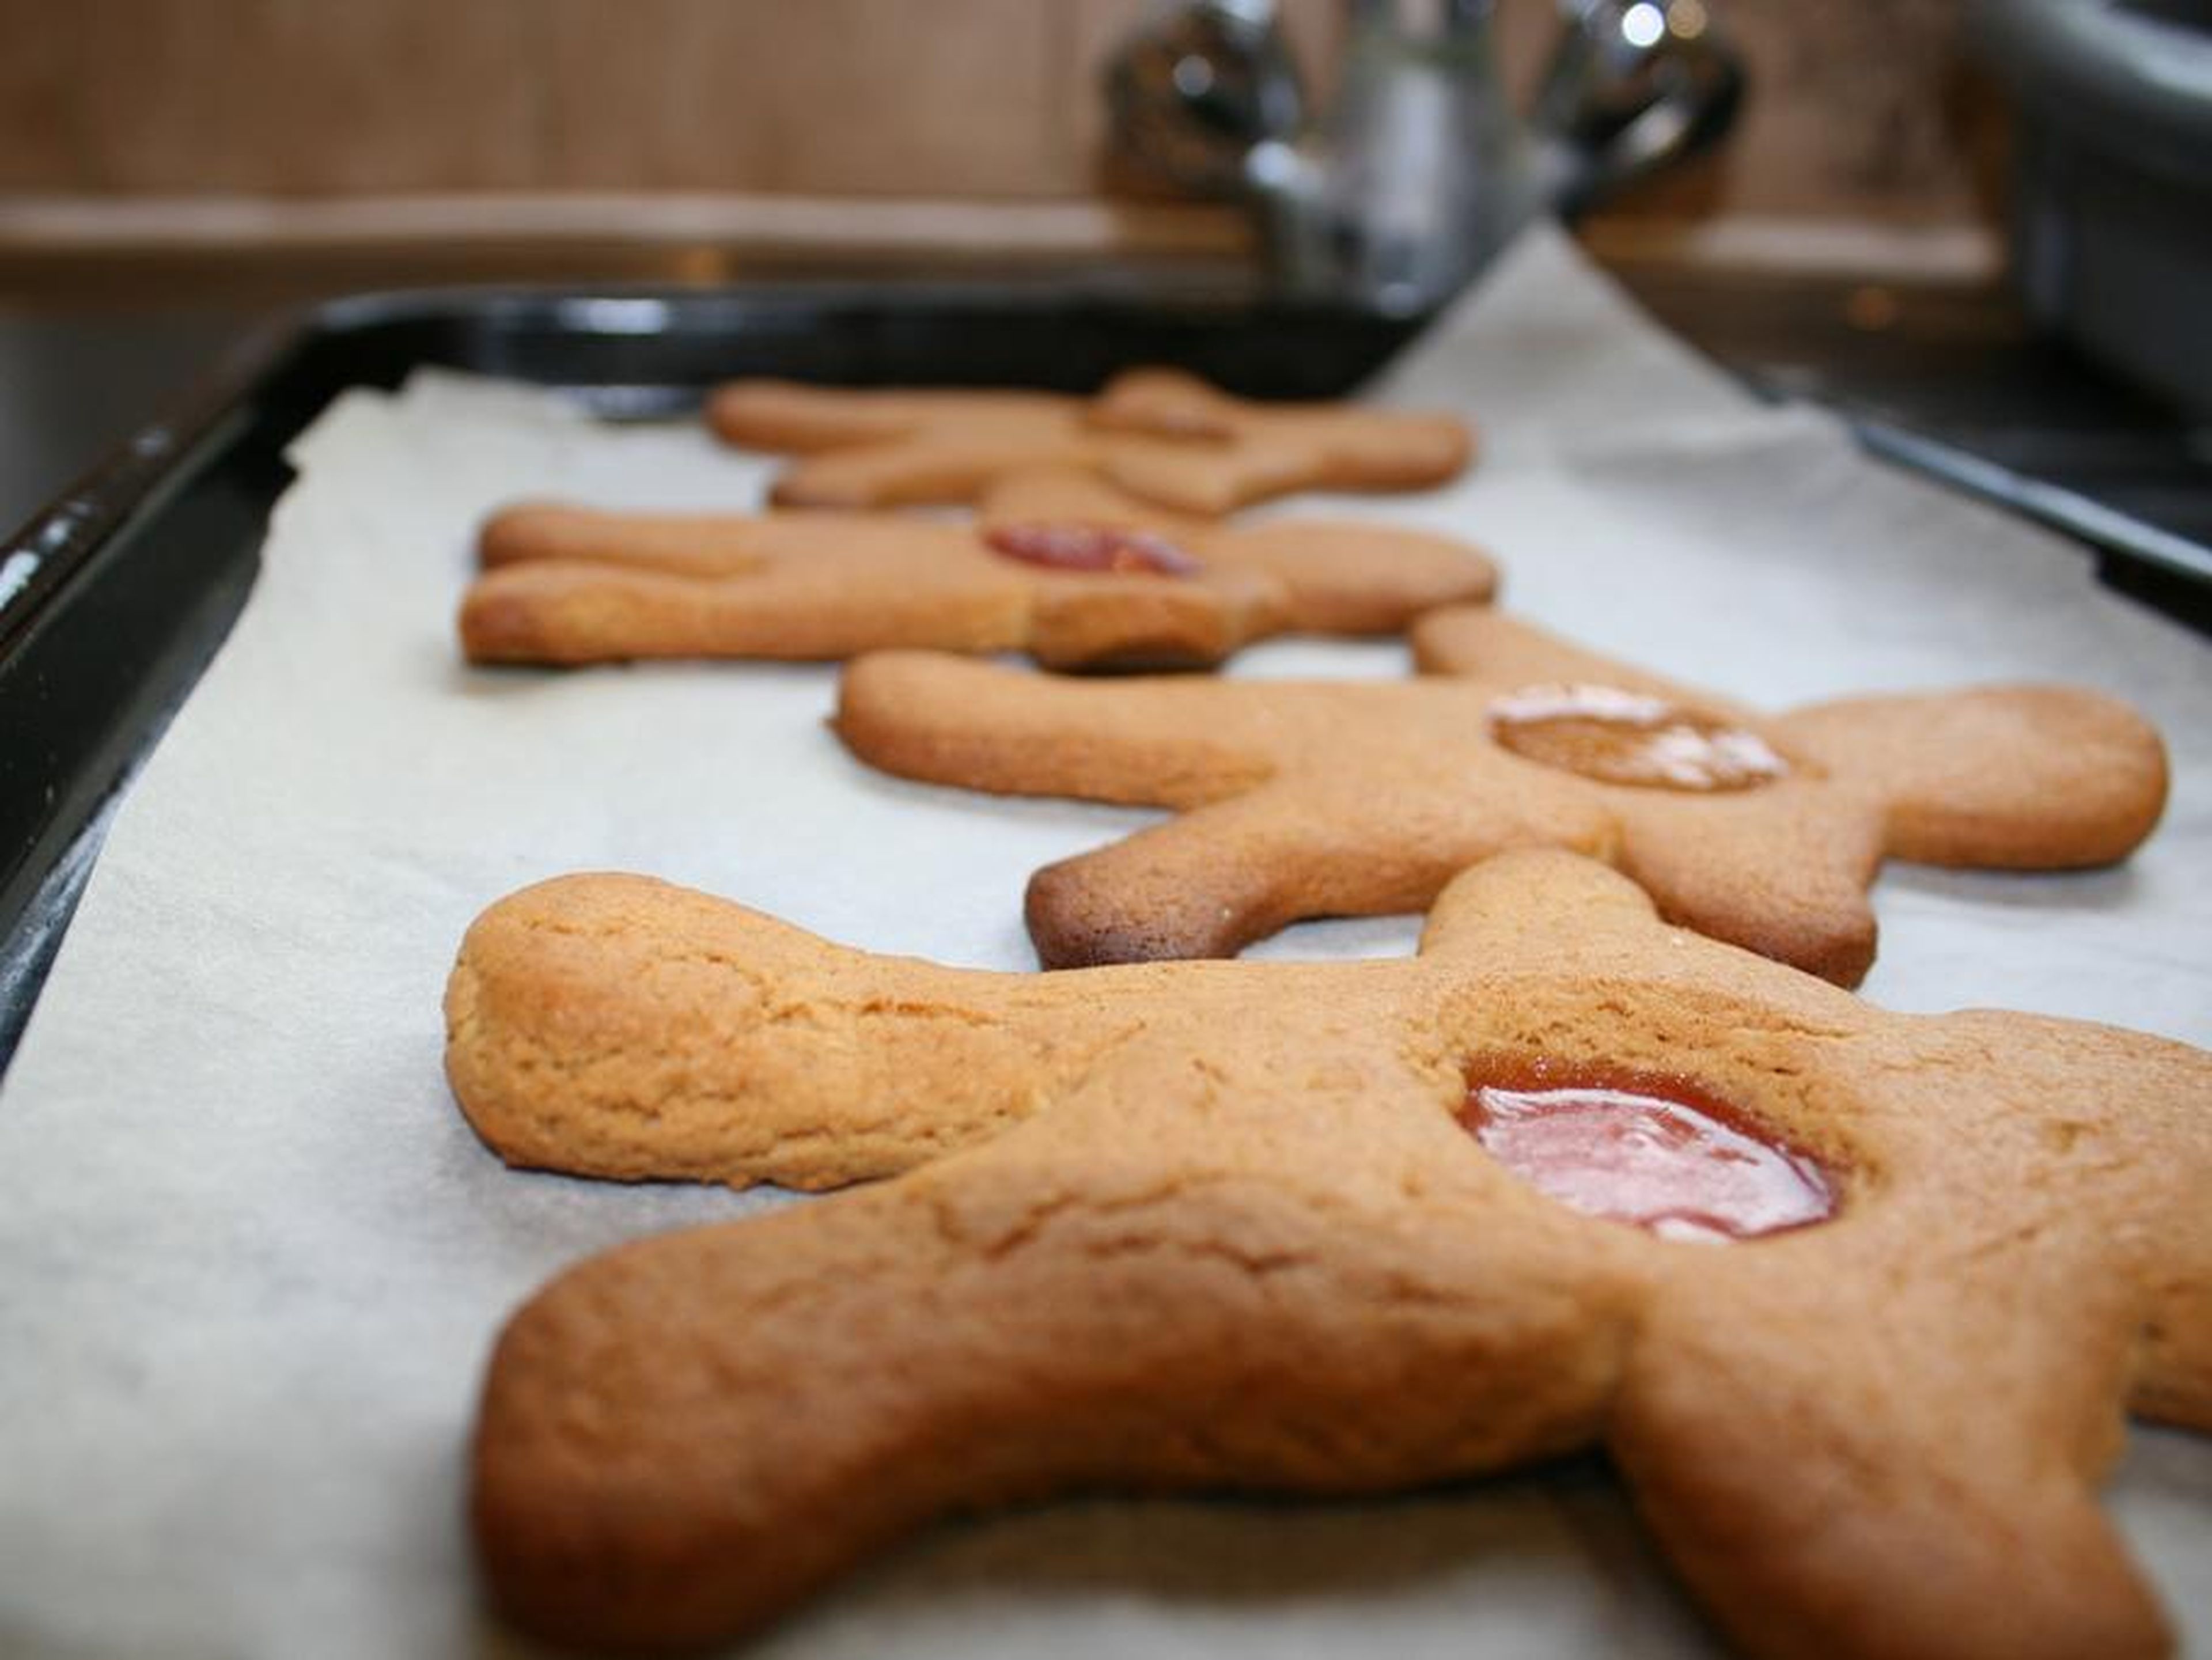 Las galletas de jengibre figuran en el menú de los astronautas este año.